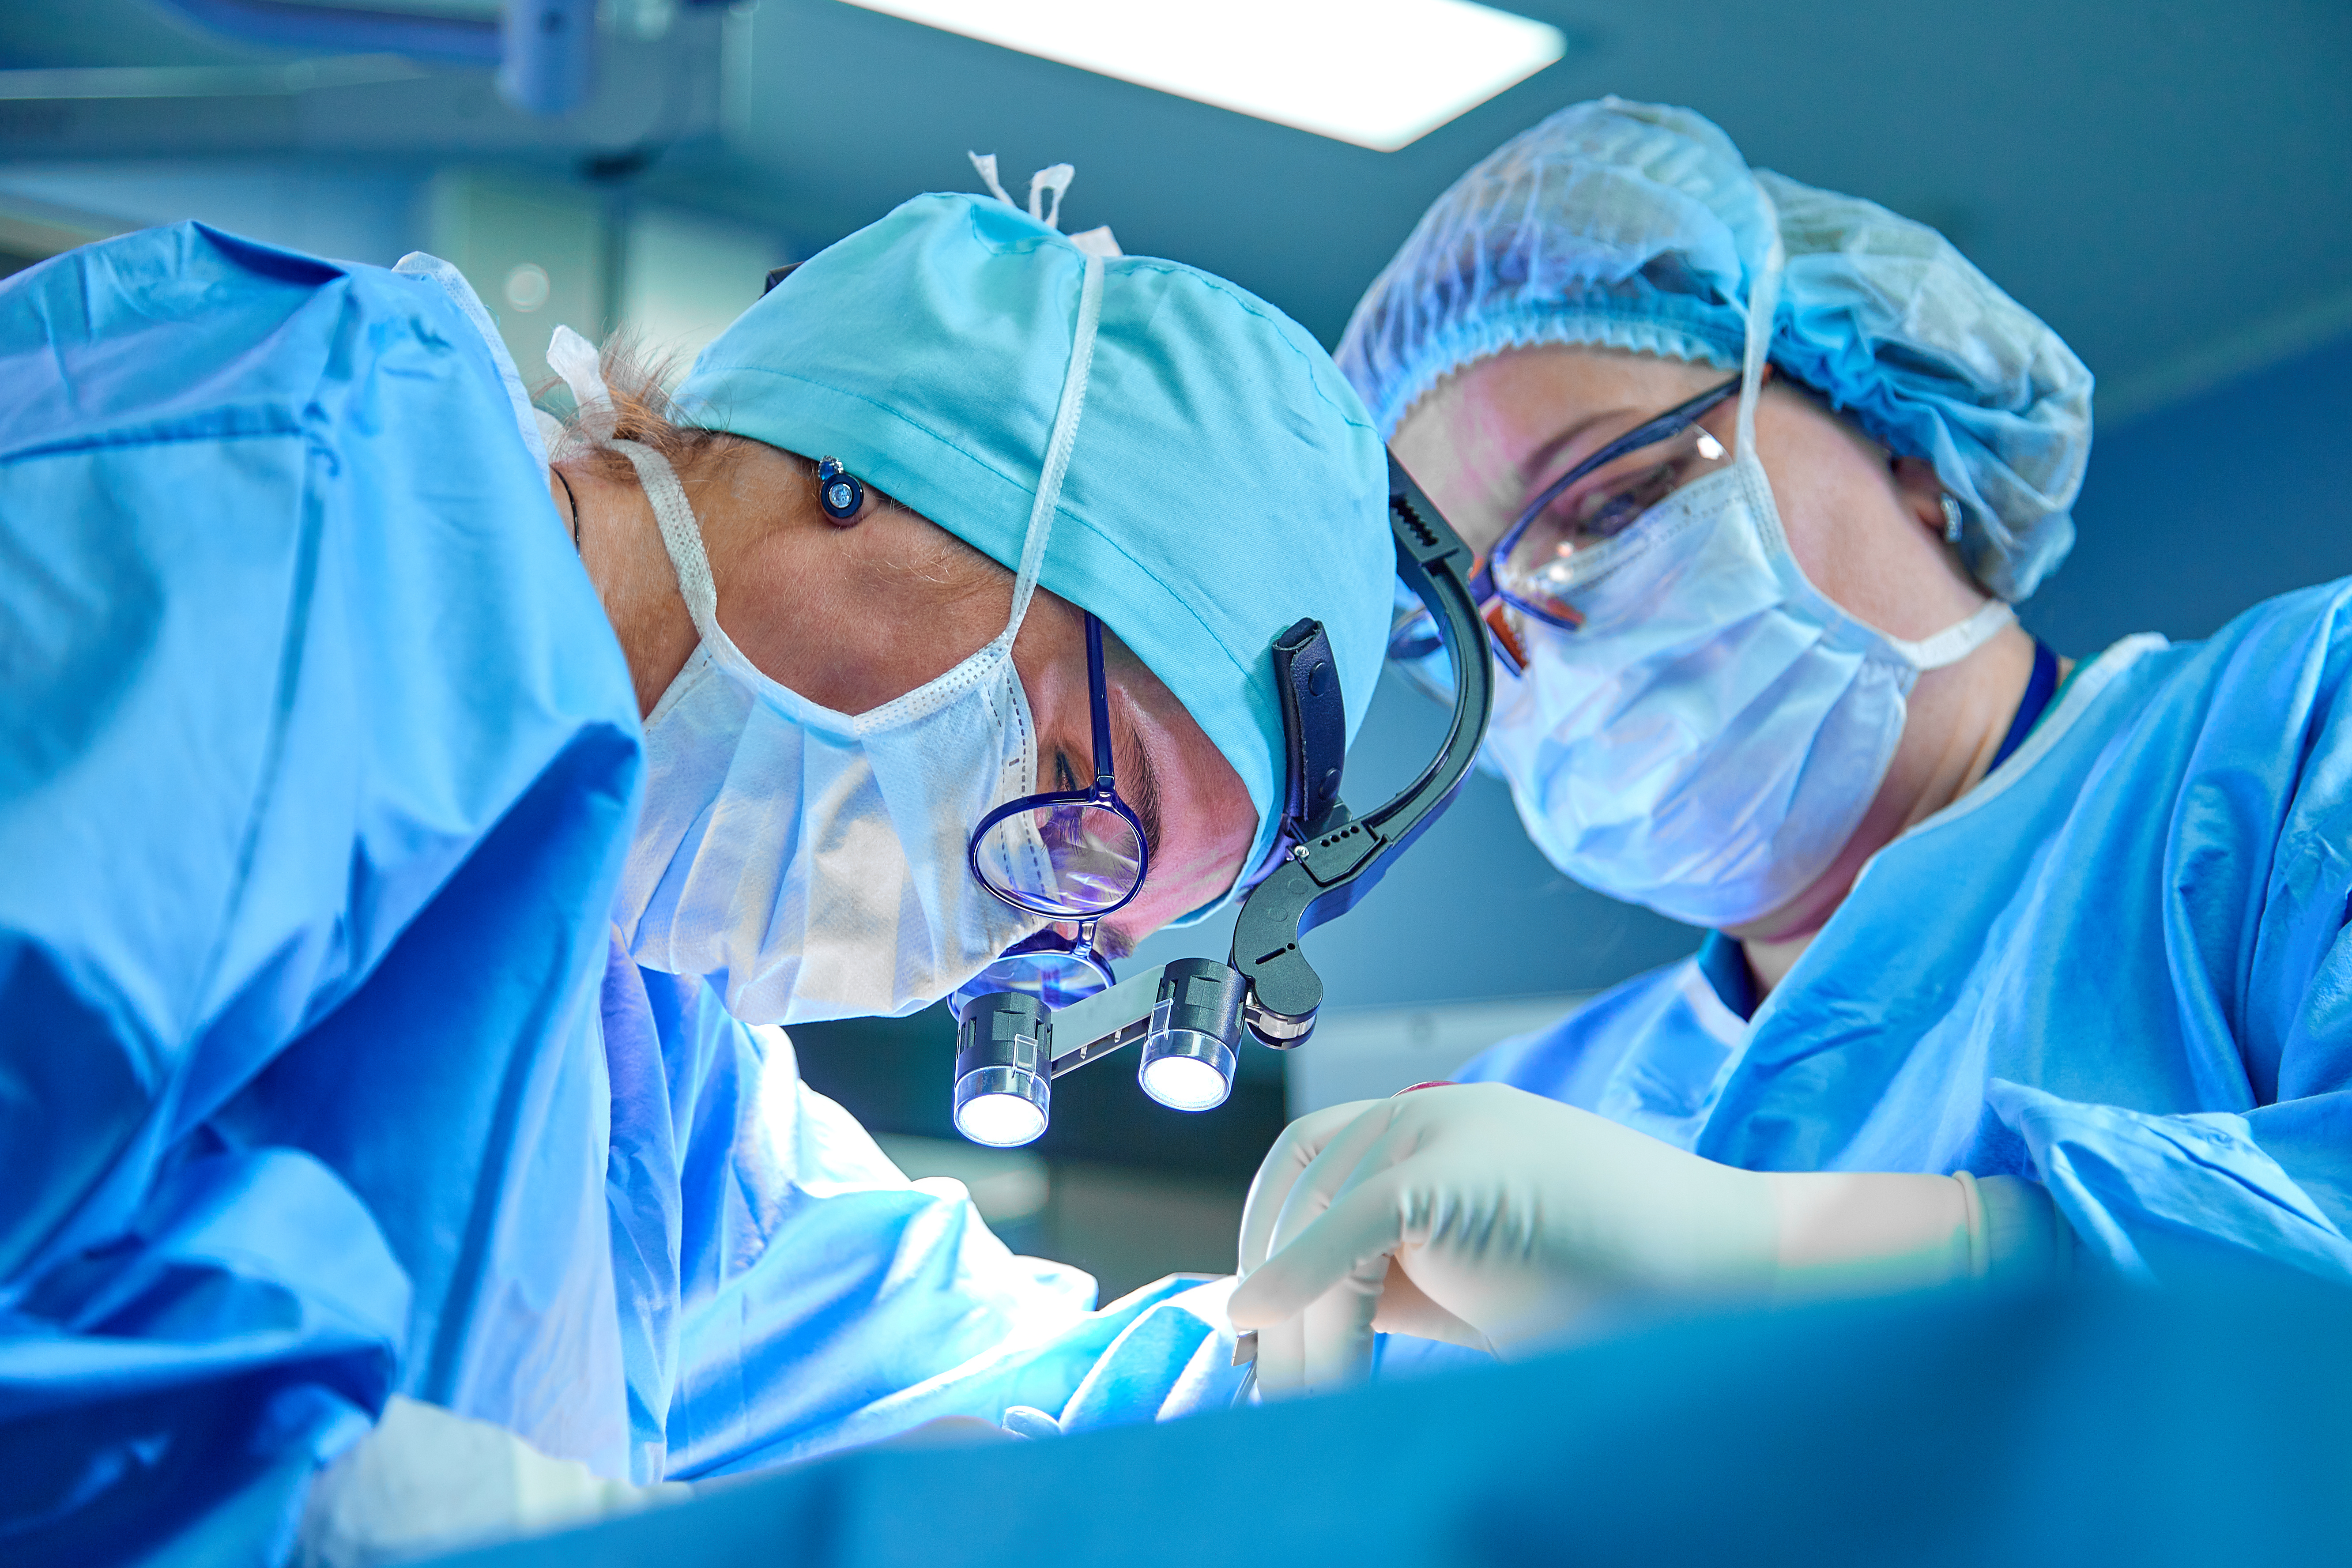 Les patients qui souffrent d'hypotension artérielle pendant une chirurgie présentent un risque accru de délire postopératoire (Visuel Adobe Stock 276021384)